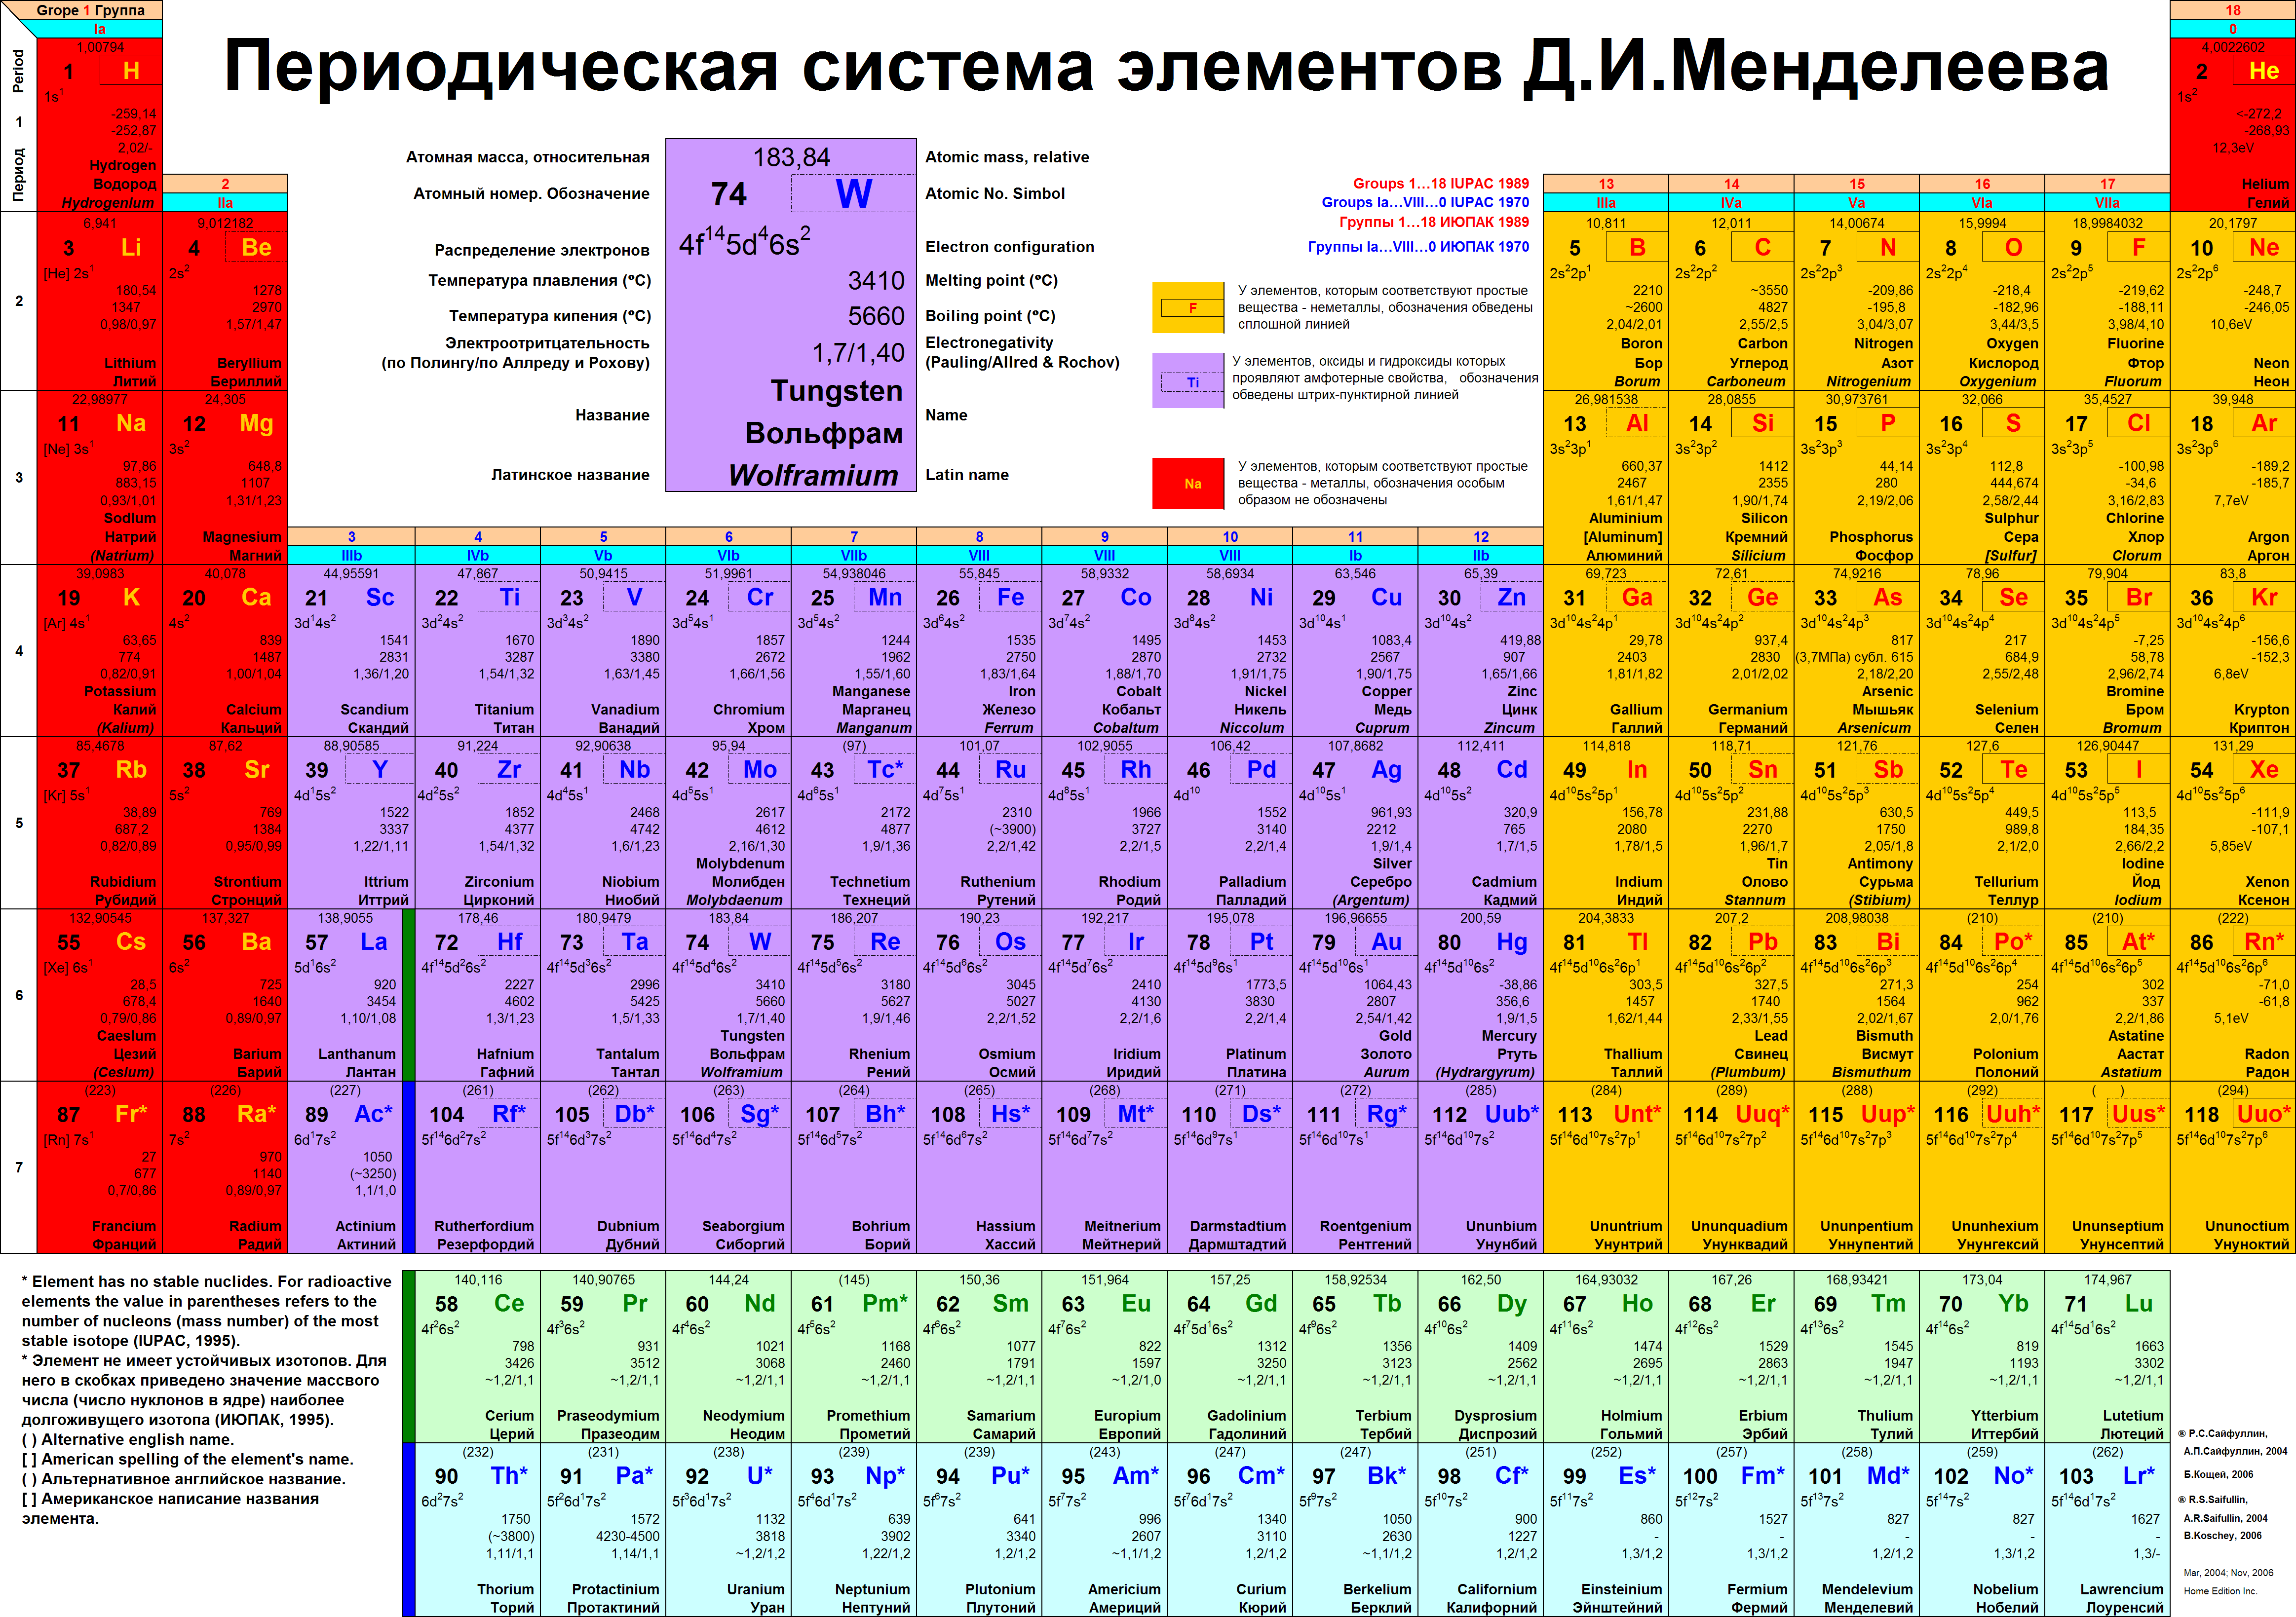 Химический элемент характеризуется. Таблица Менделеева периодическая таблица Менделеева. Периодическая система химических элементов Менделеева 118 элементов. Таблица Менделеева 118 элементов для печати. Длинная форма периодической таблицы Менделеева.